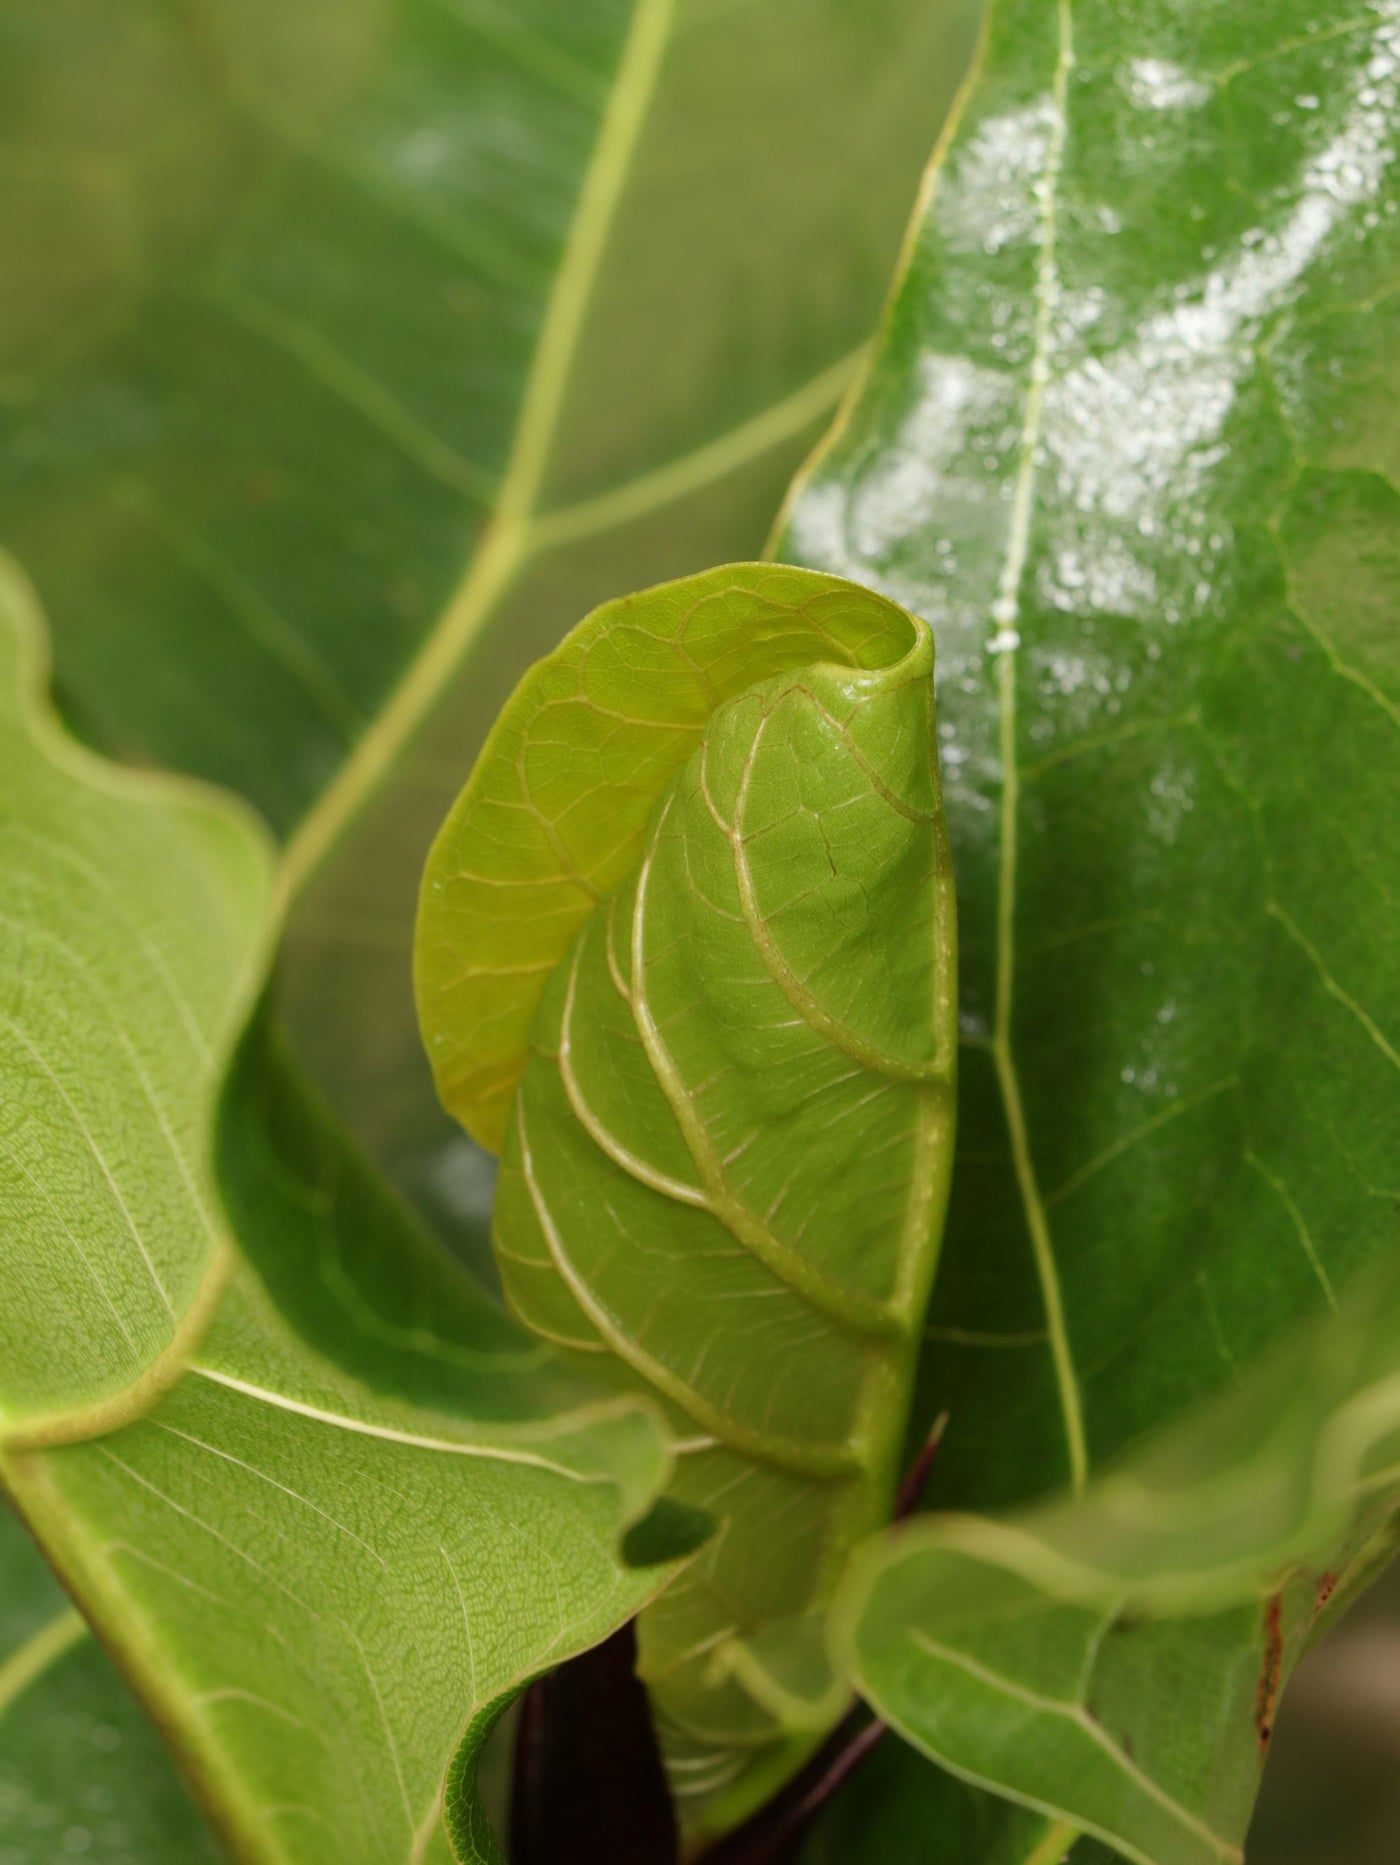 Large Fiddle Leaf Fig